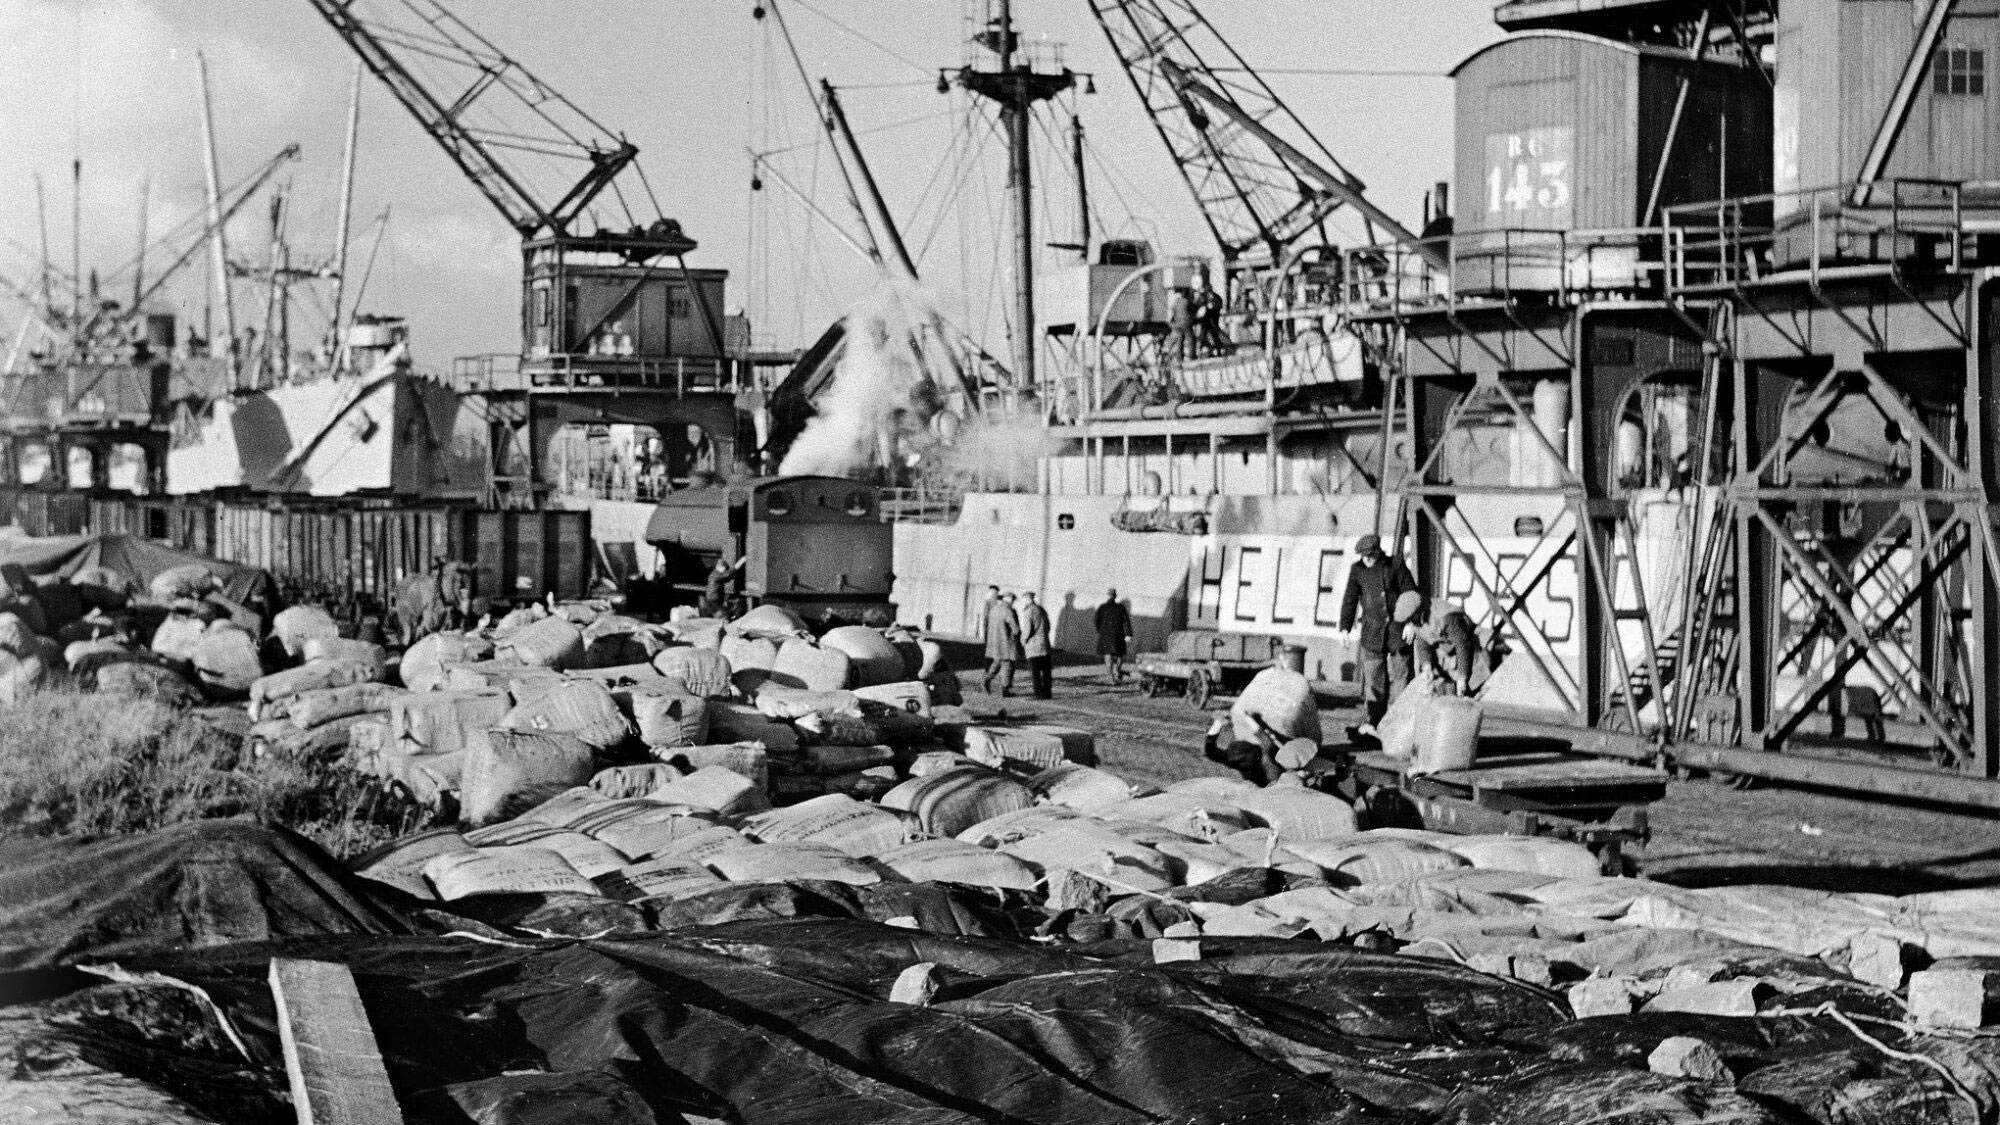 Surge at San Francisco A Port After Pearl Harbor, 1941-42